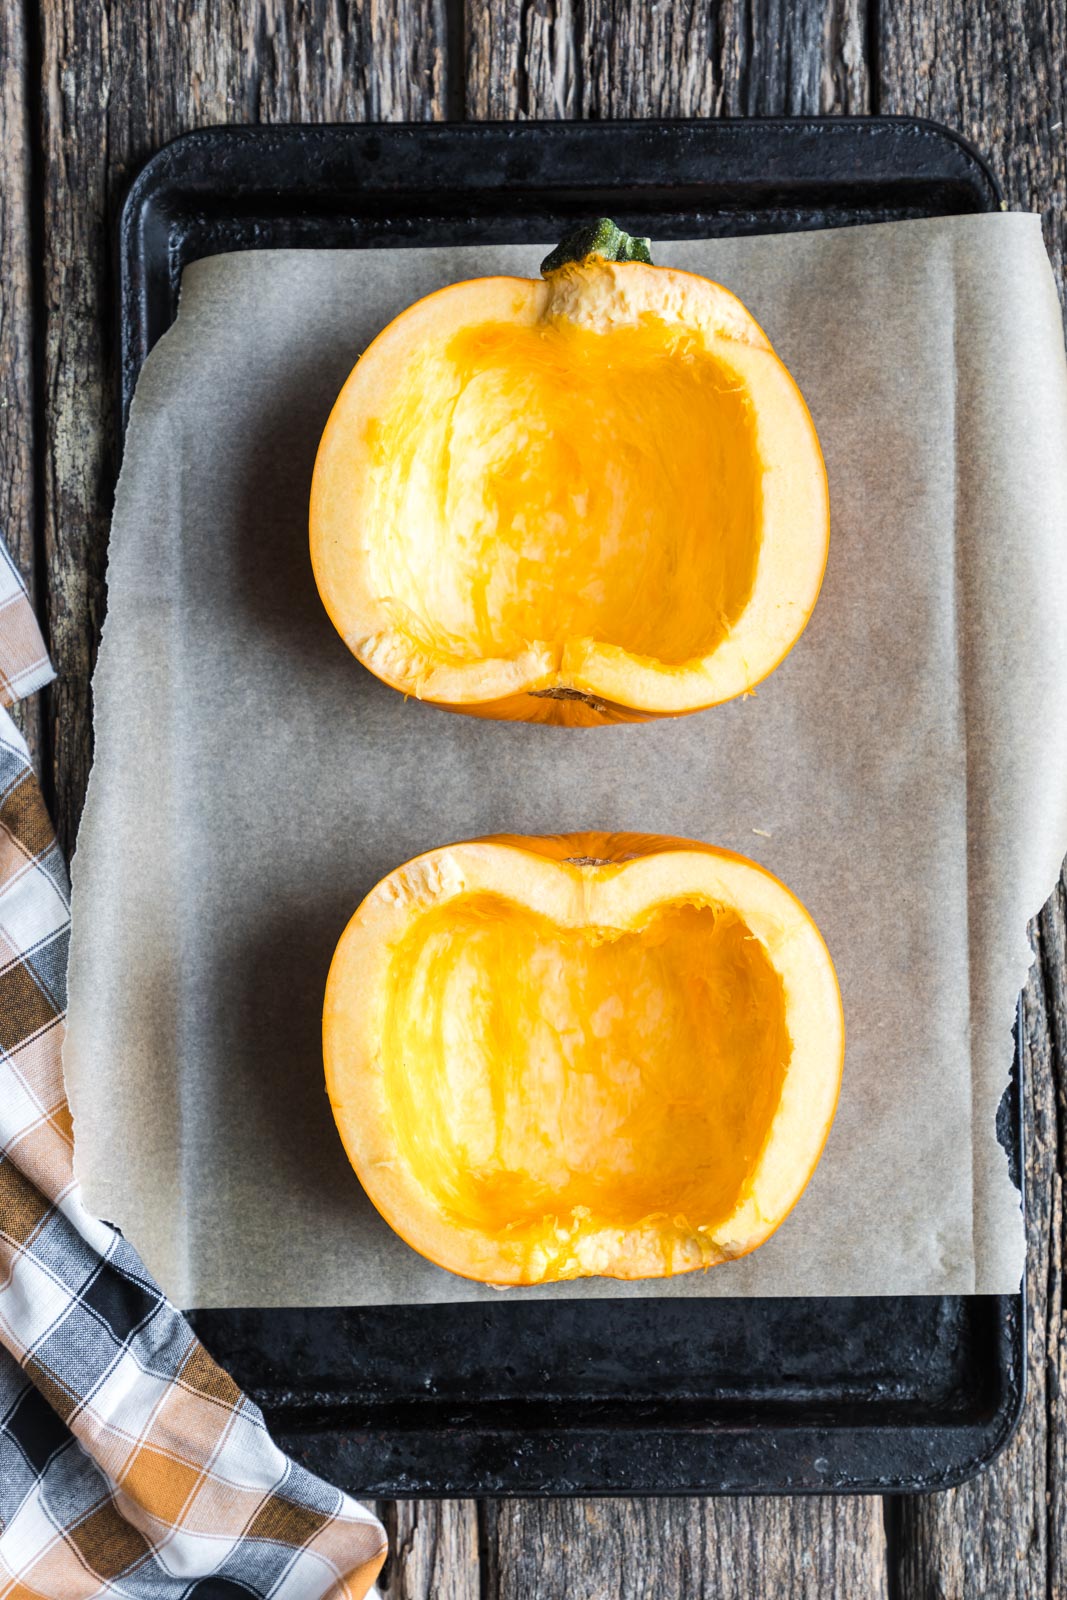 2 halves of a sugar pumpkin cut-side up on a baking sheet. 